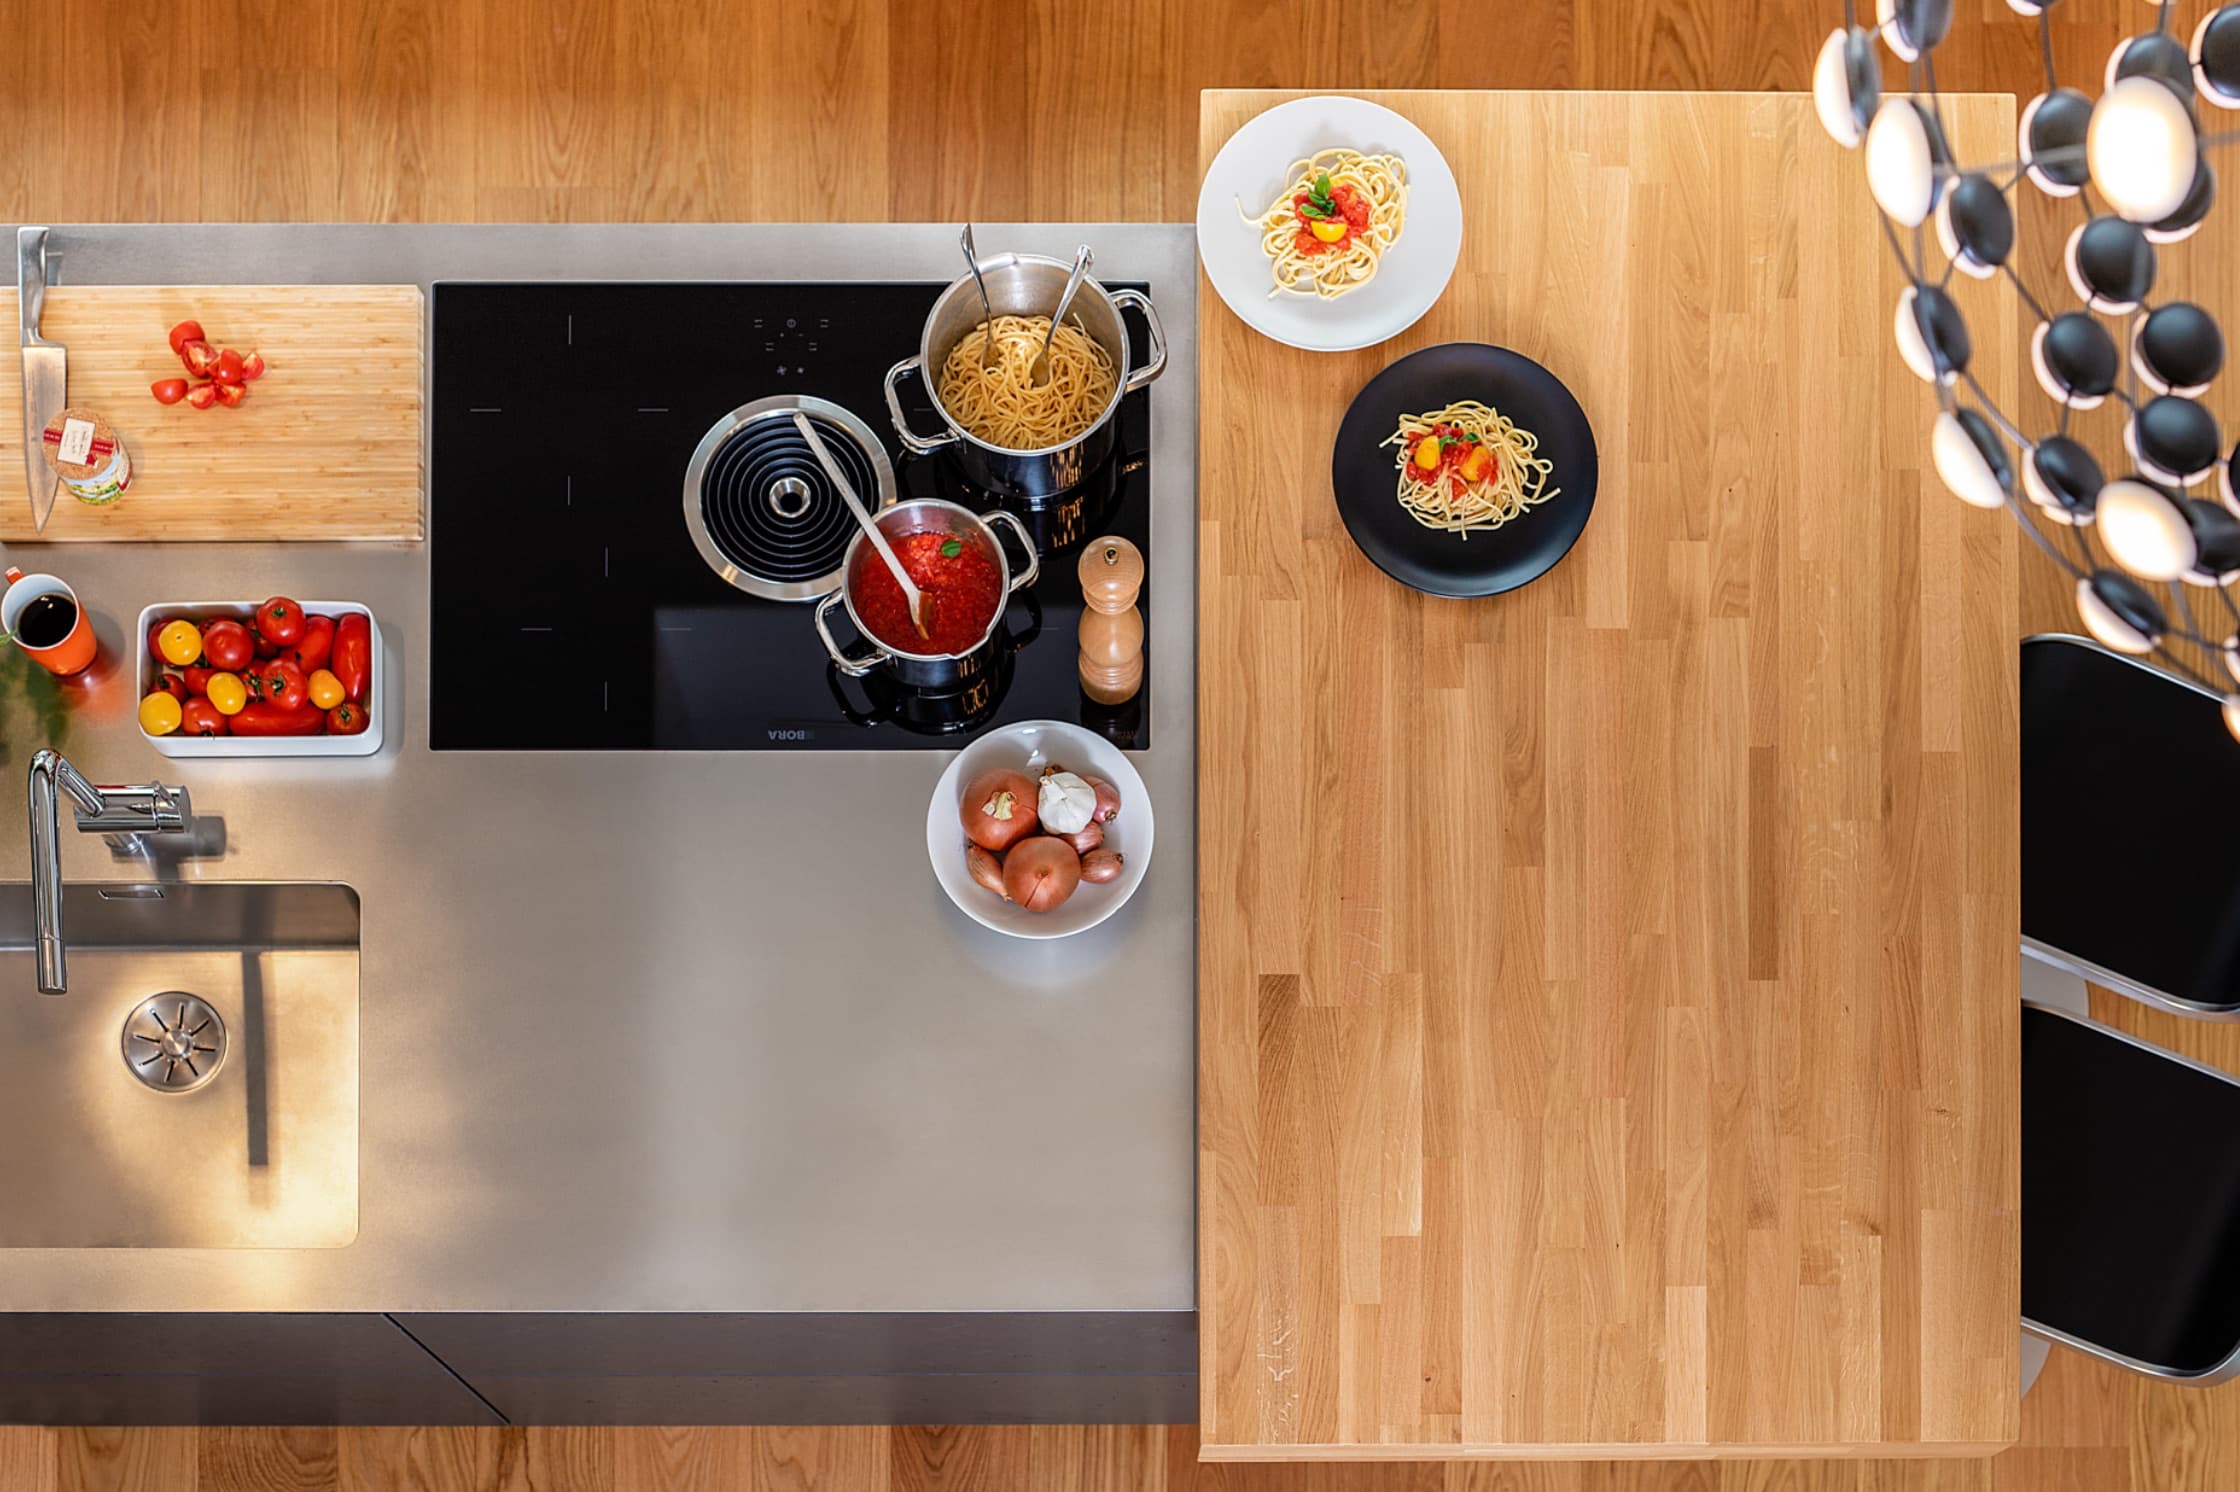 Offene Küche und maßgefertigte Möbel – Interior Design mit Konzept